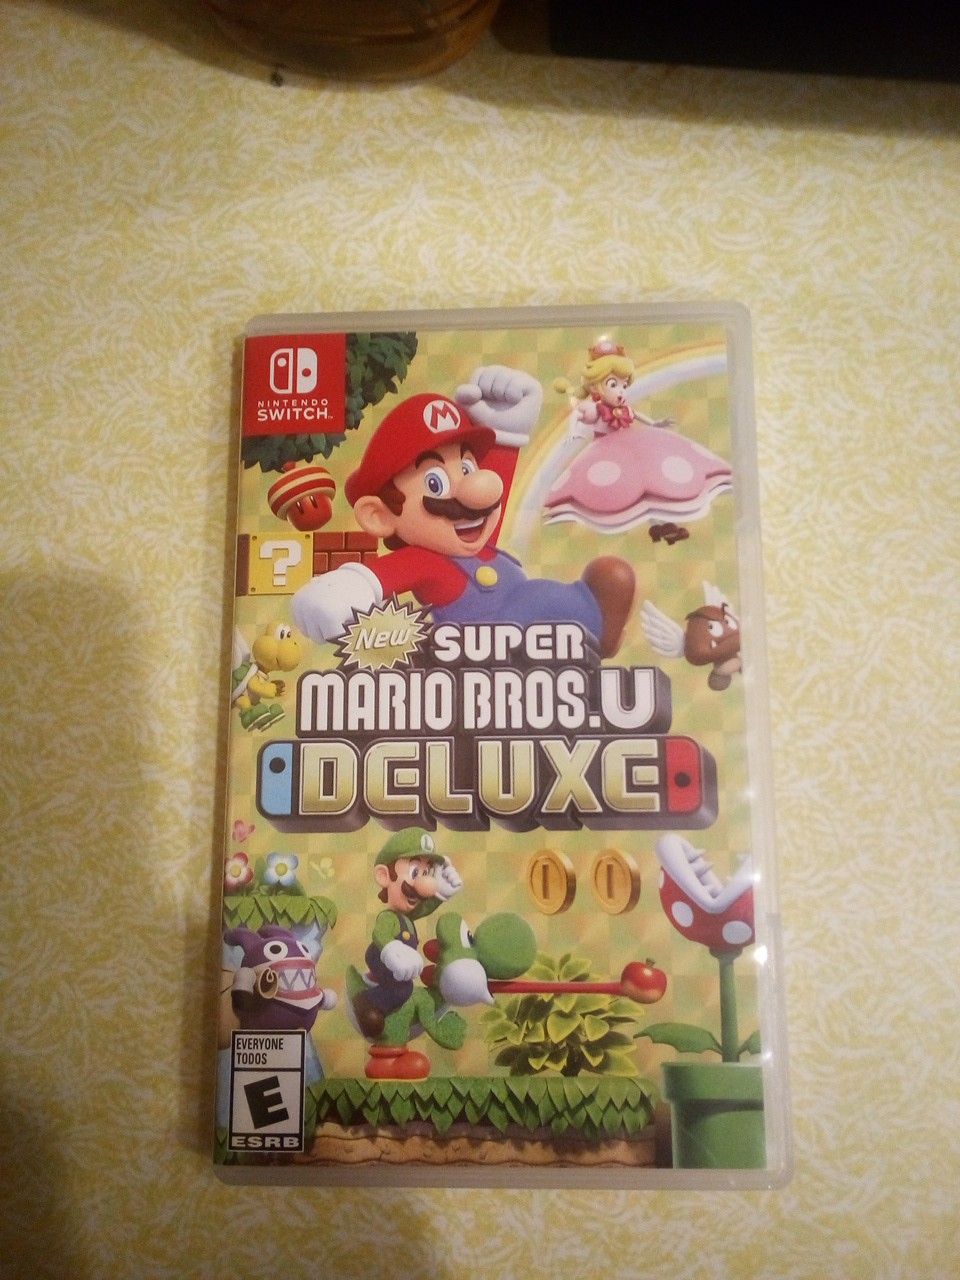 Super Mario Bros. U Deluxe